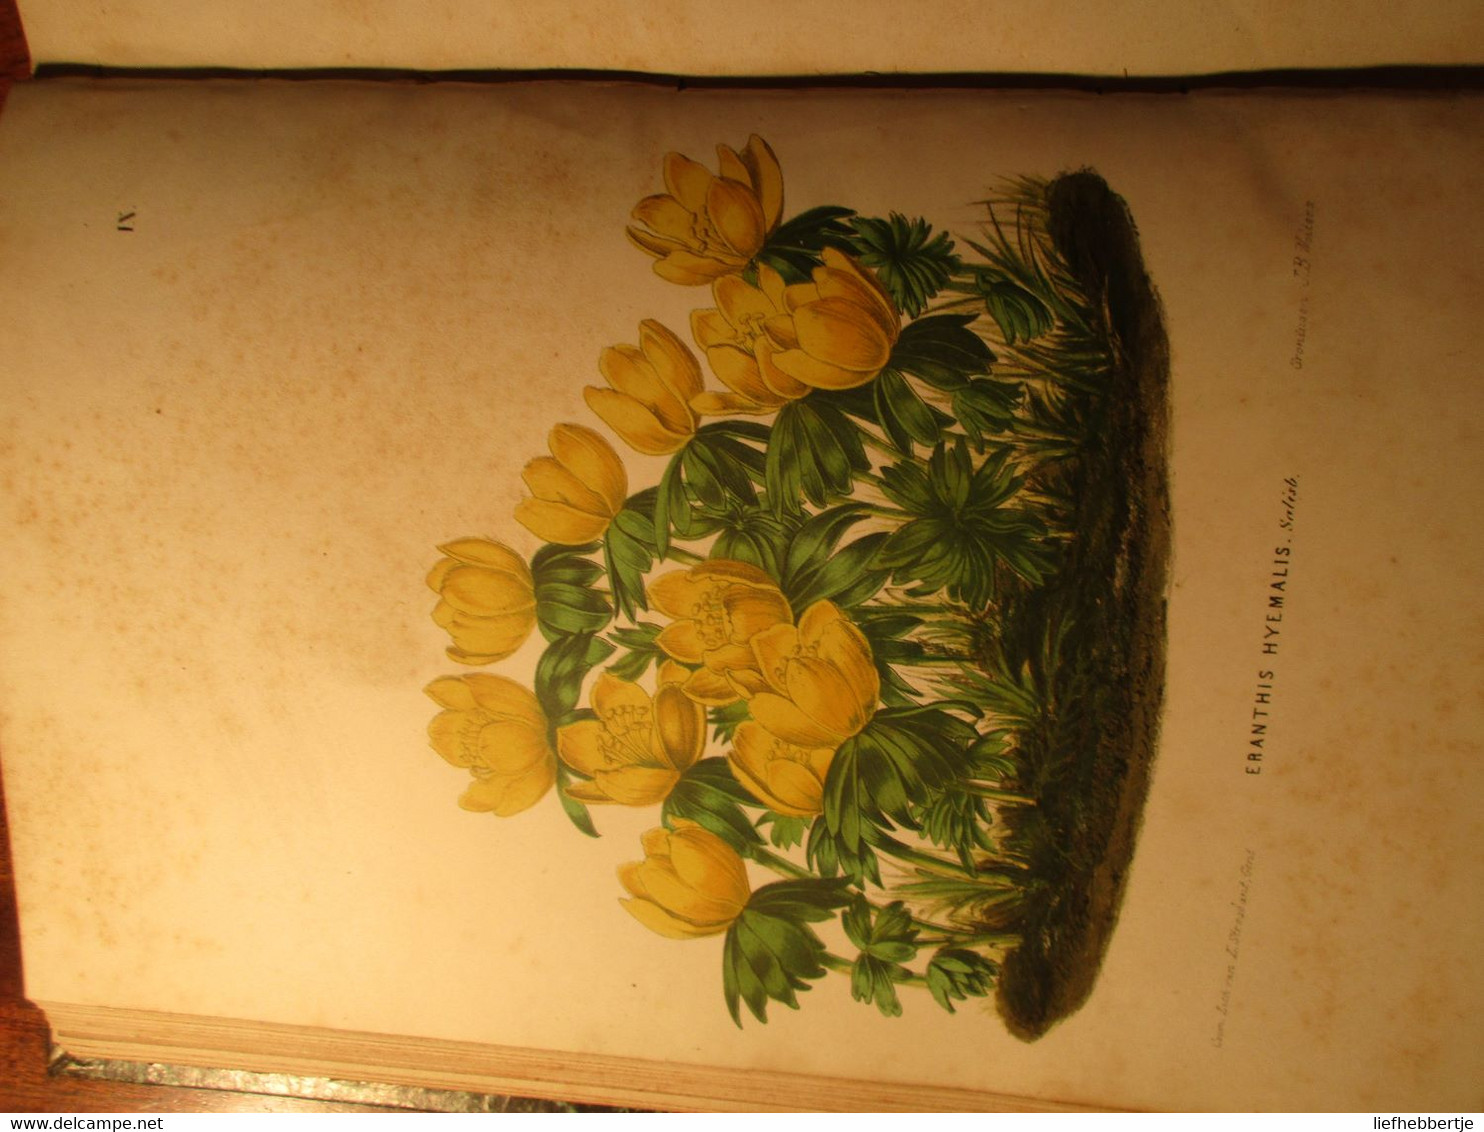 Neerlands plantentuin - sierplanten voor tuin en kamer - door C. Oudemans - 1865 - deel 1 - bloemen